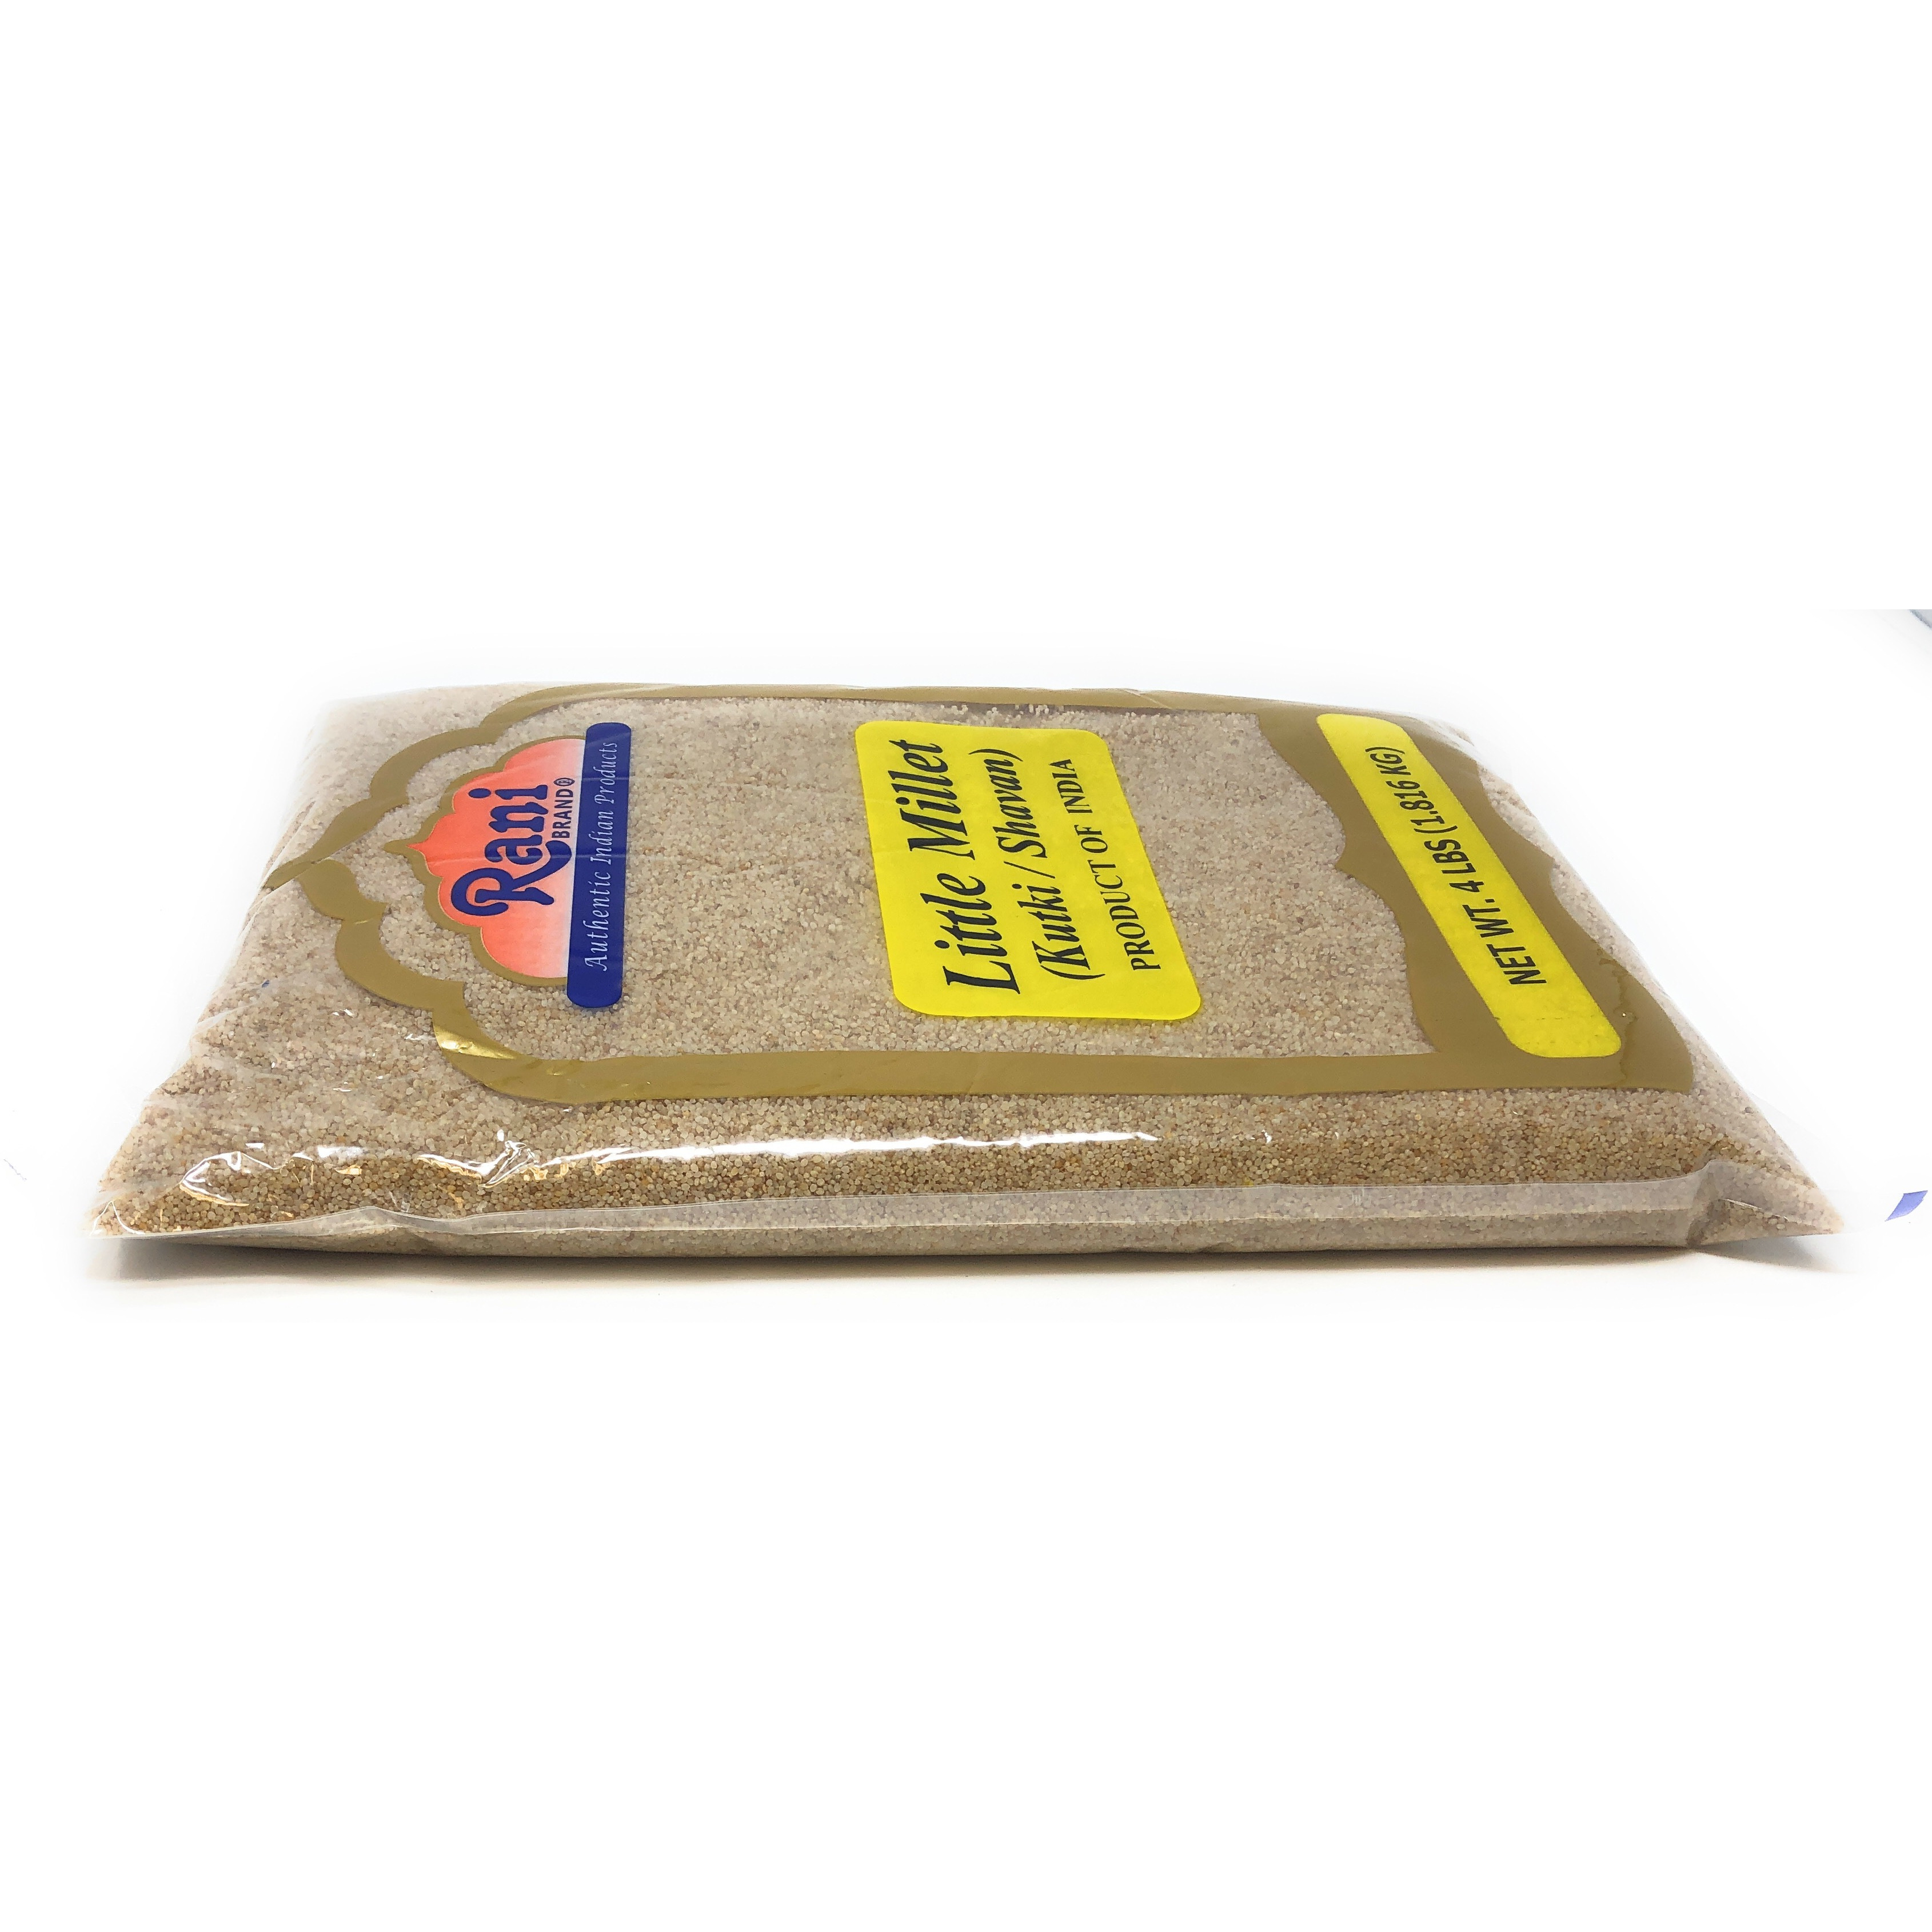 Rani Little Millet (Panicum Sumatrense) Whole Ancient Grain Seeds 4 Pound, 4lbs (64oz) ~ All Natural | Gluten Friendly | NON-GMO | Vegan | Indian Origin | Kutki / Shavan / Saamai / Sama Kannada